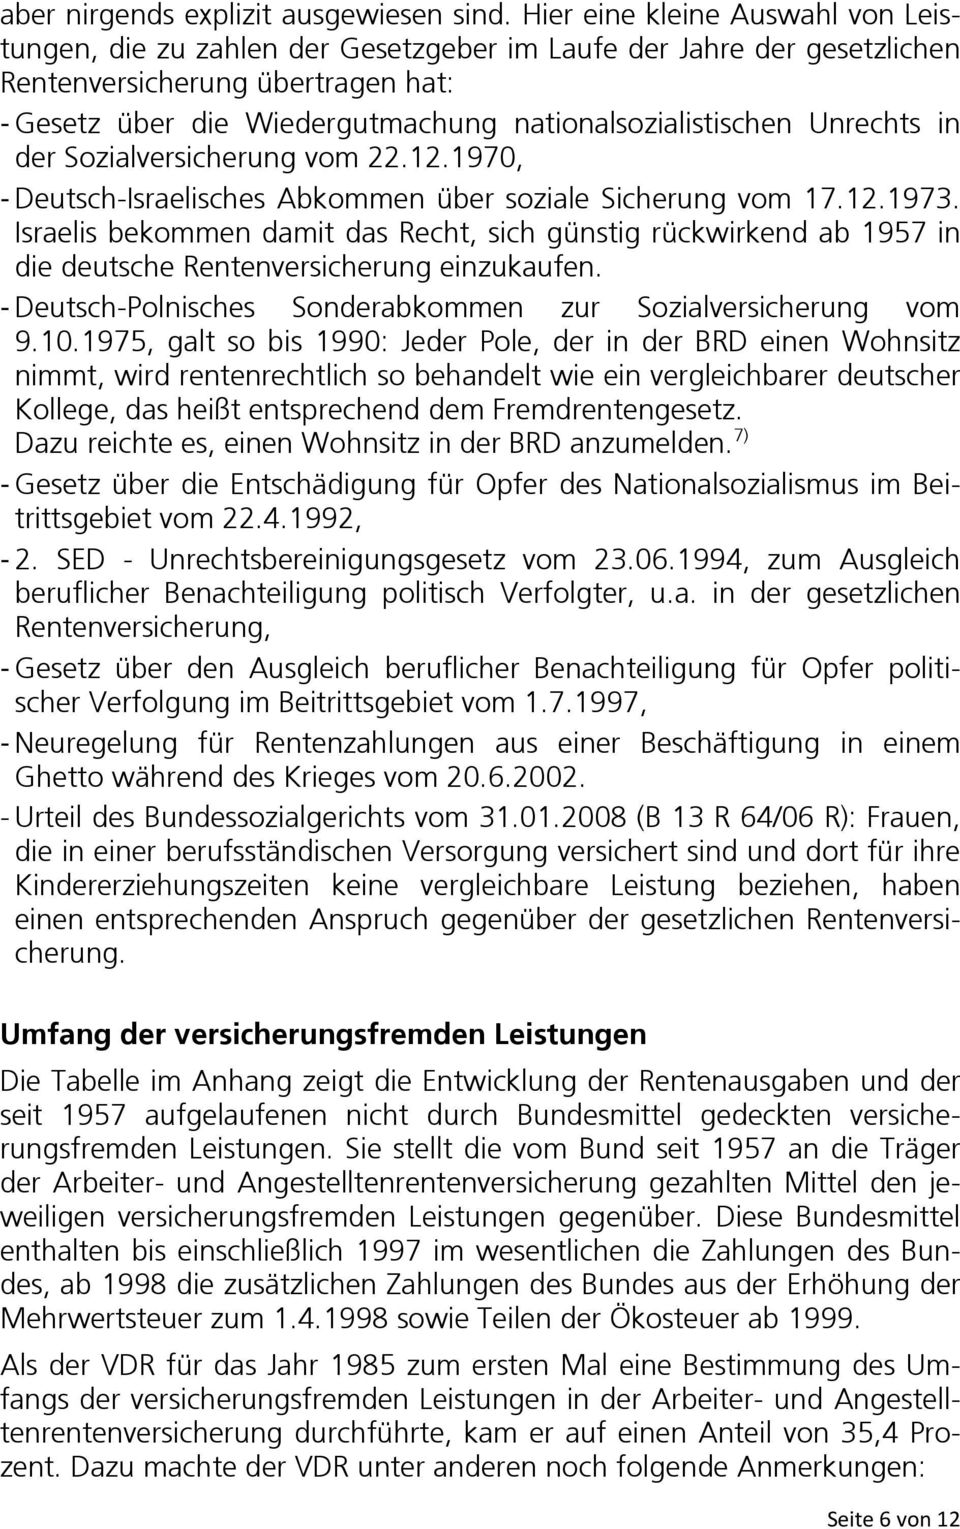 nationalsozialistischen Unrechts in der Sozialversicherung vom 22.12.1970, - Deutsch-Israelisches Abkommen über soziale Sicherung vom 17.12.1973.